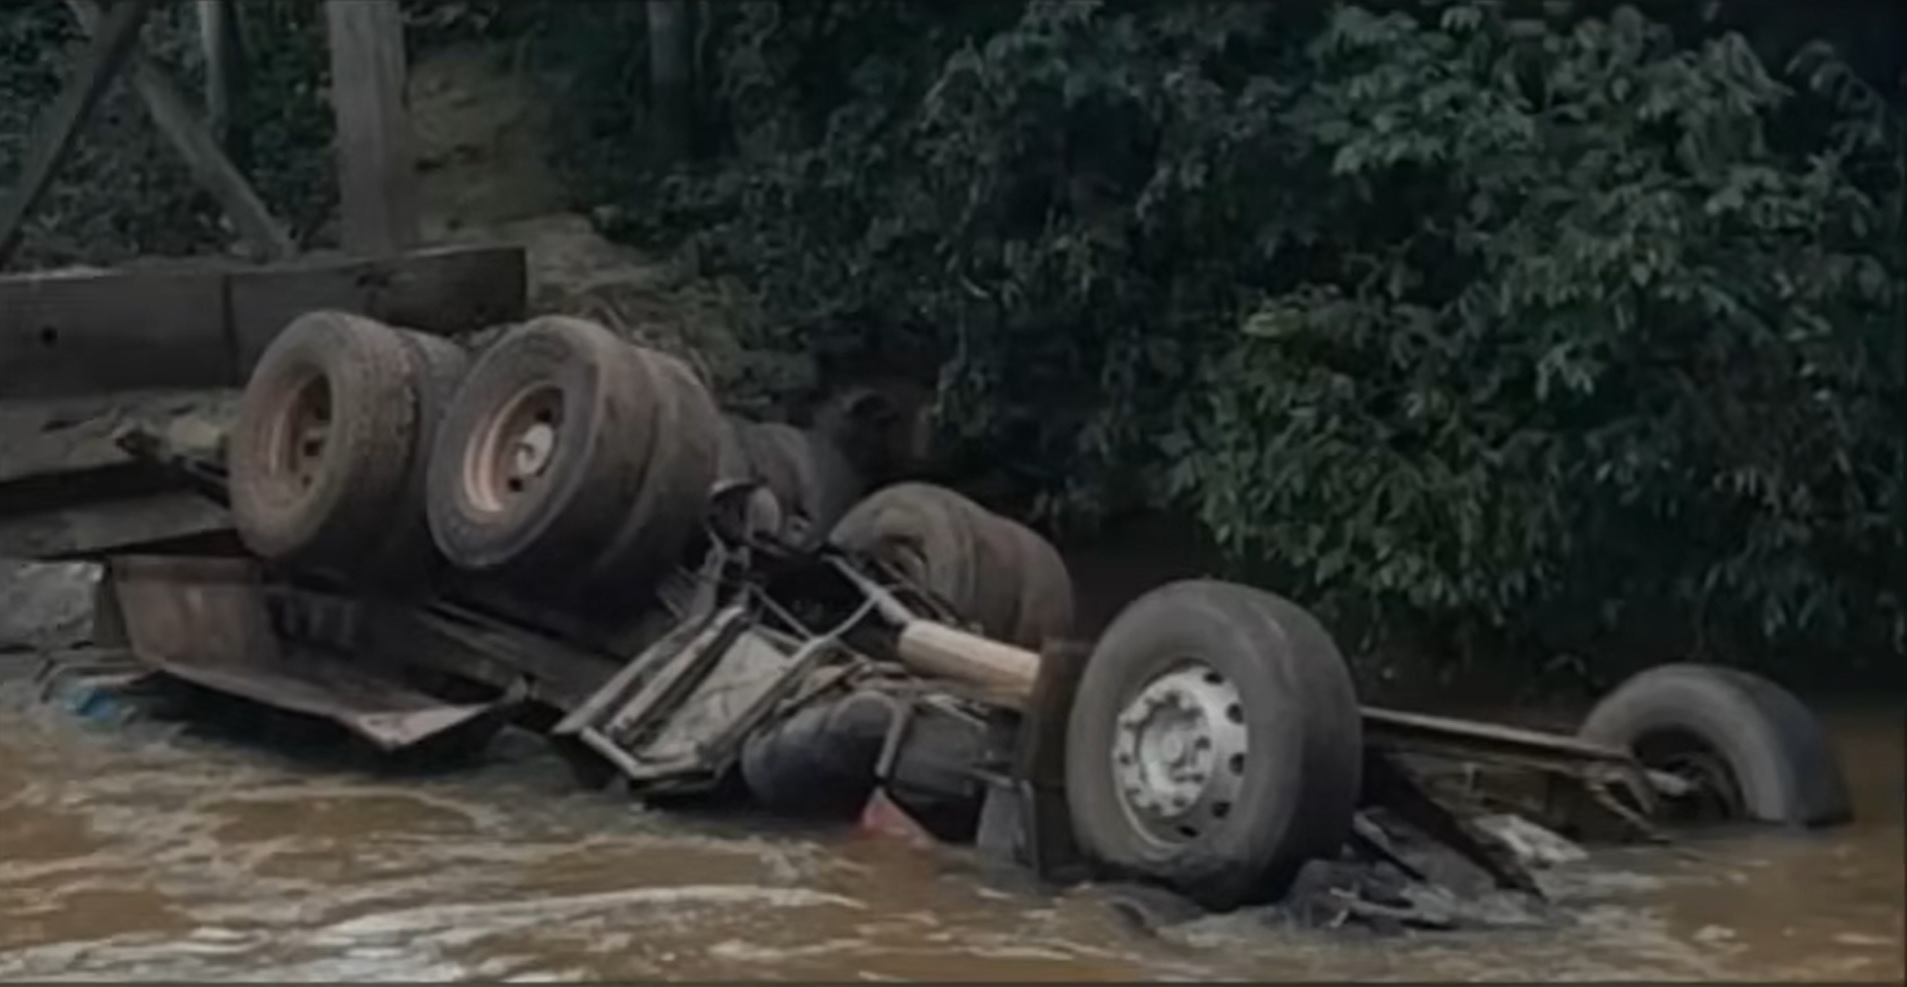 Ponte cede e caminhão cai dentro de rio no Goiás